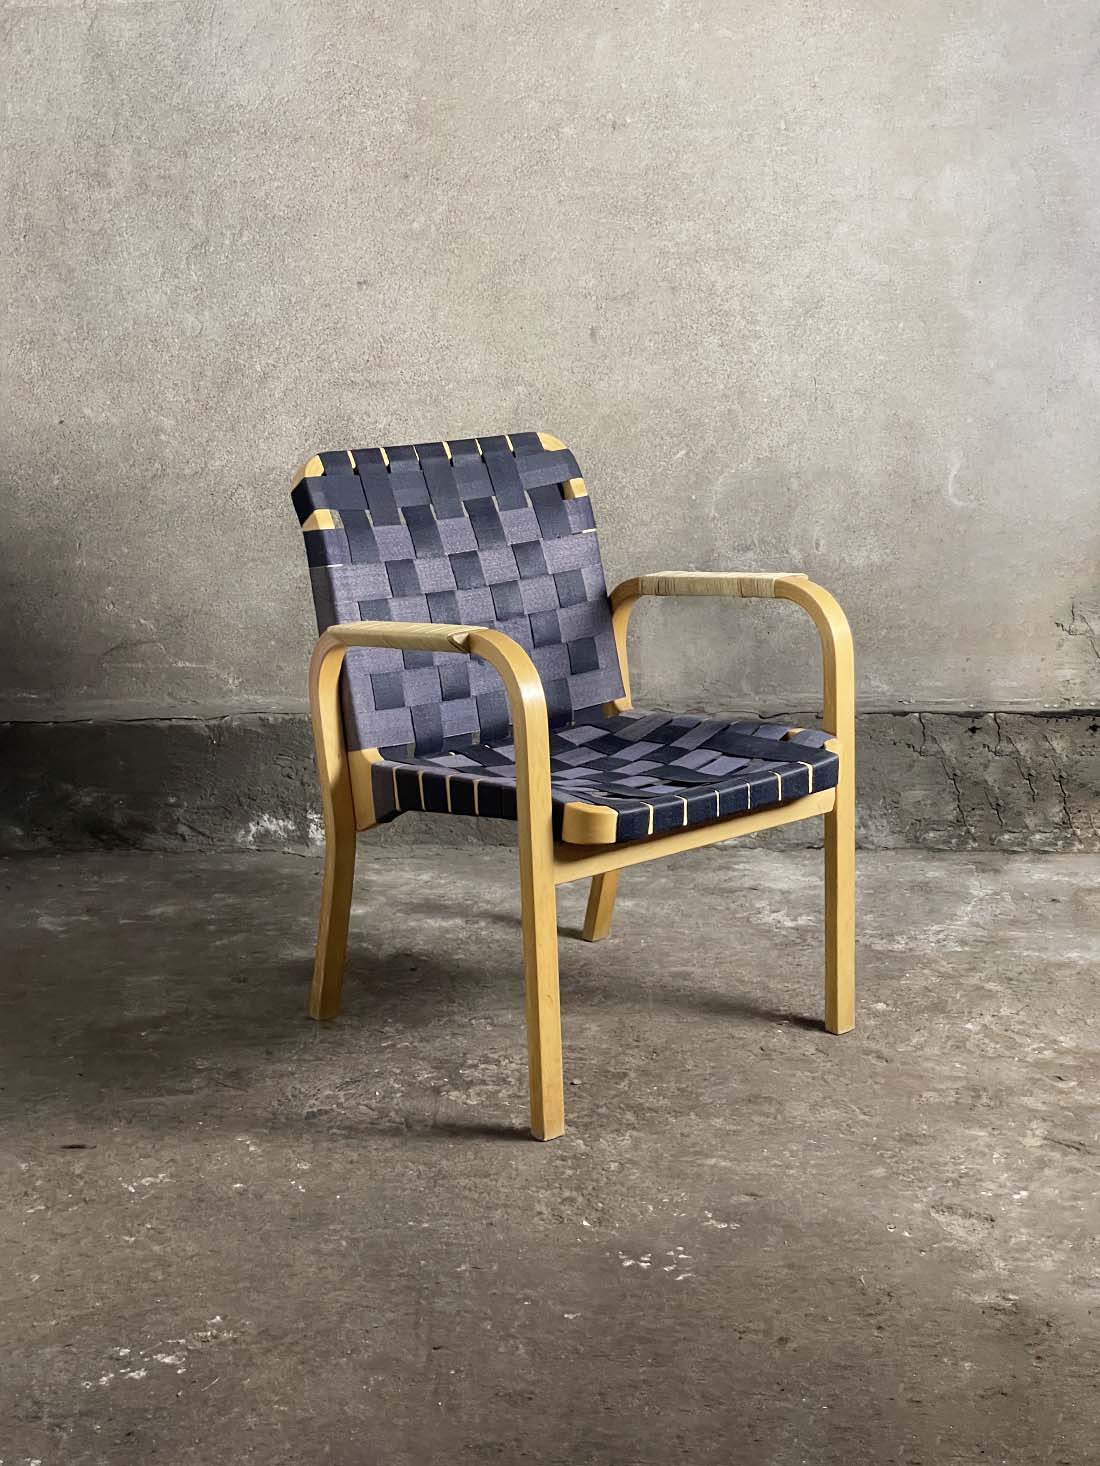 krzesło nr. 45, Artek, proj. Alvar Aalto, Finlandia,